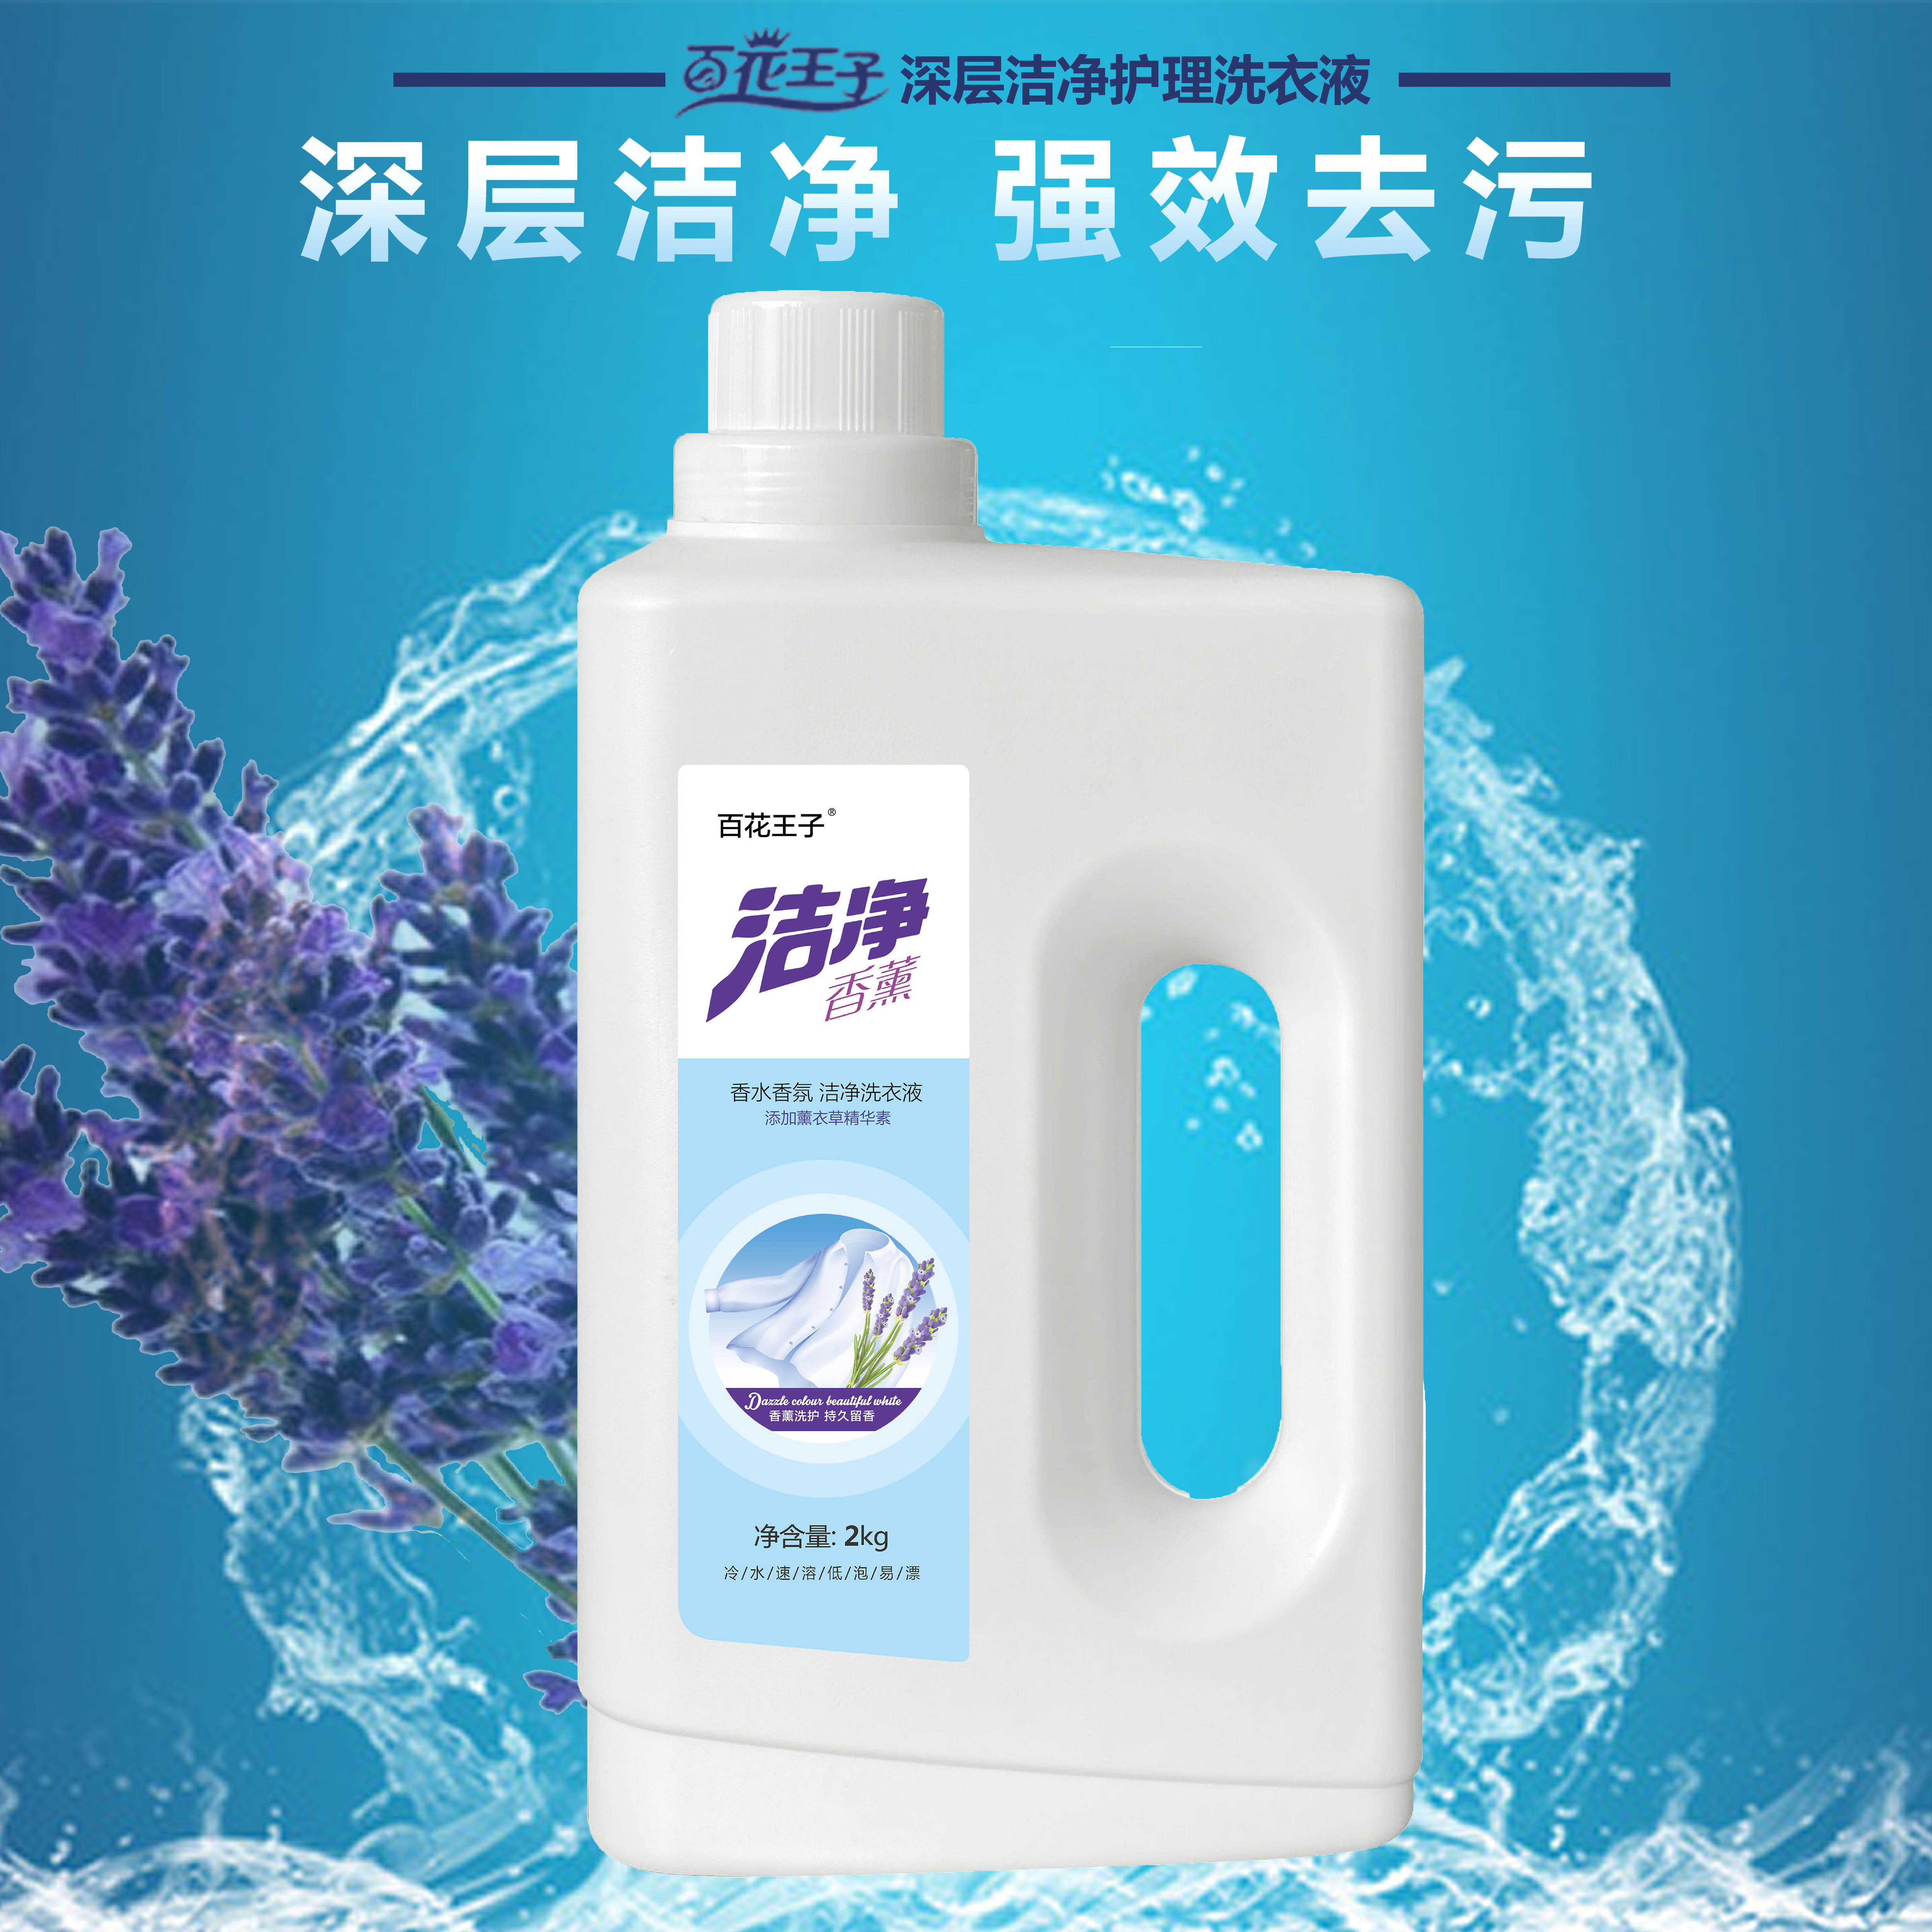 驻马店许昌为什么使用河南洗衣液代加工生产厂家的的洗衣液比普通肥皂更好？